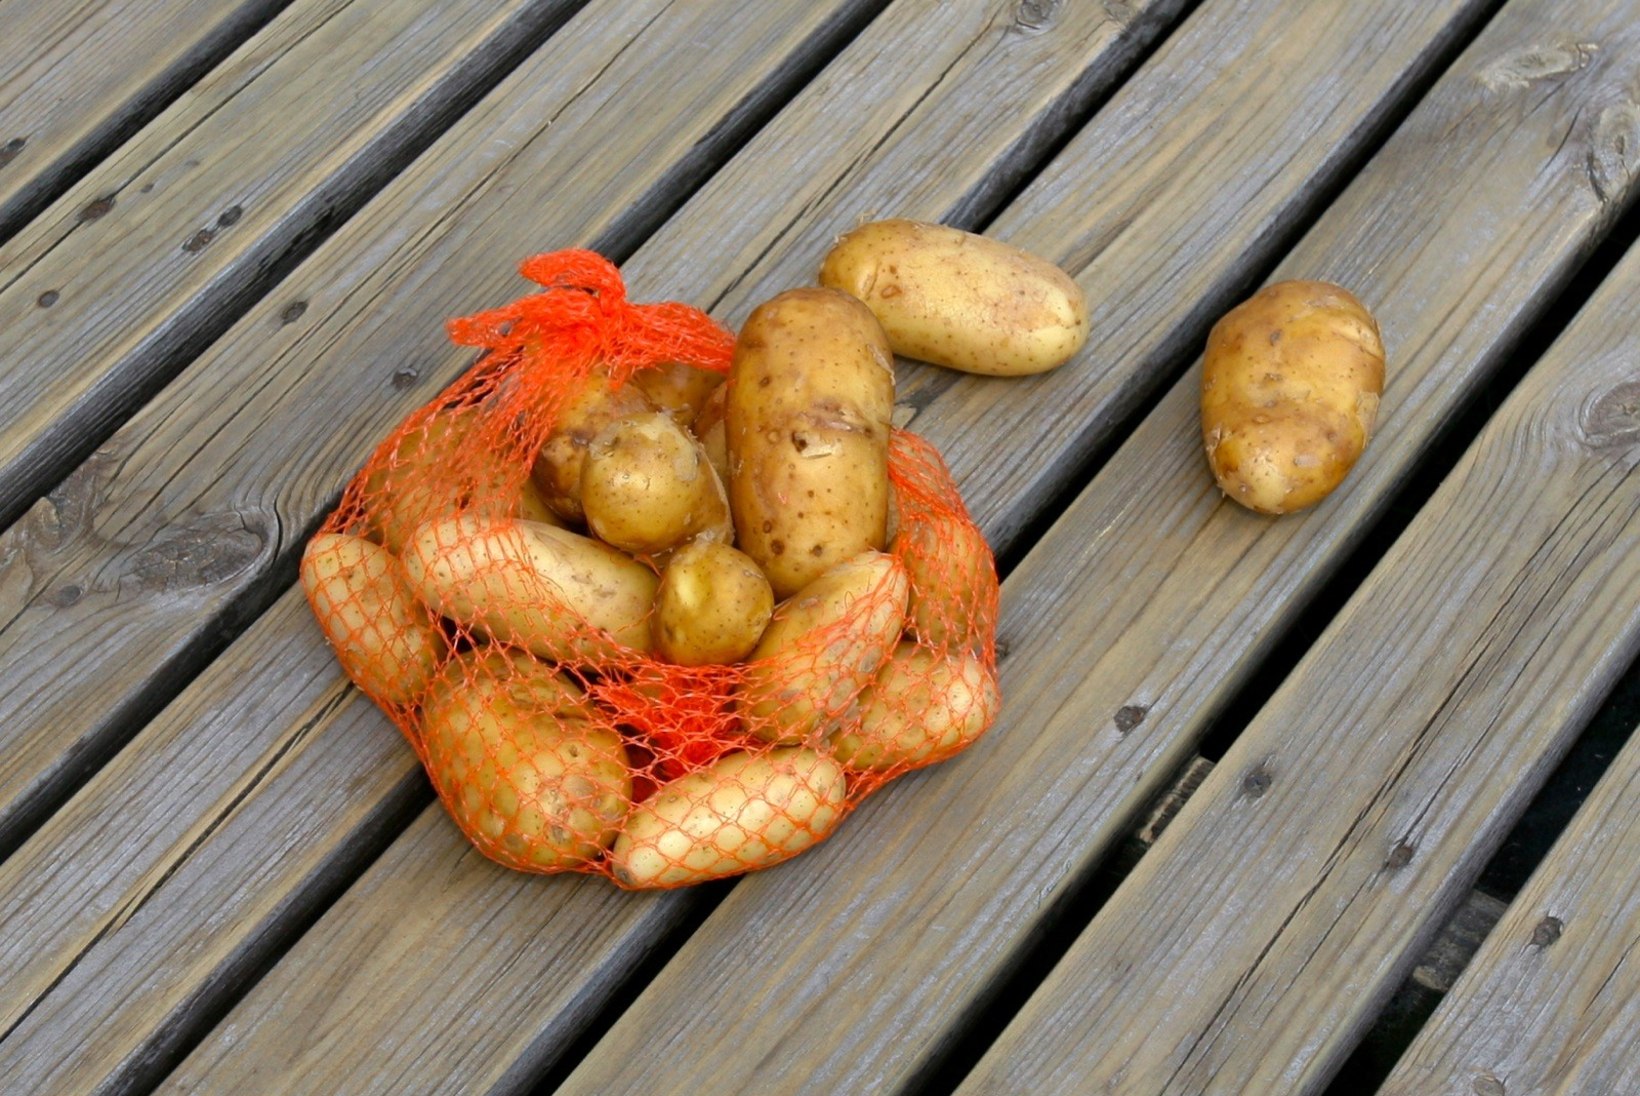 Roheliseks läinud kartuleid ei tohiks müüa ega süüa